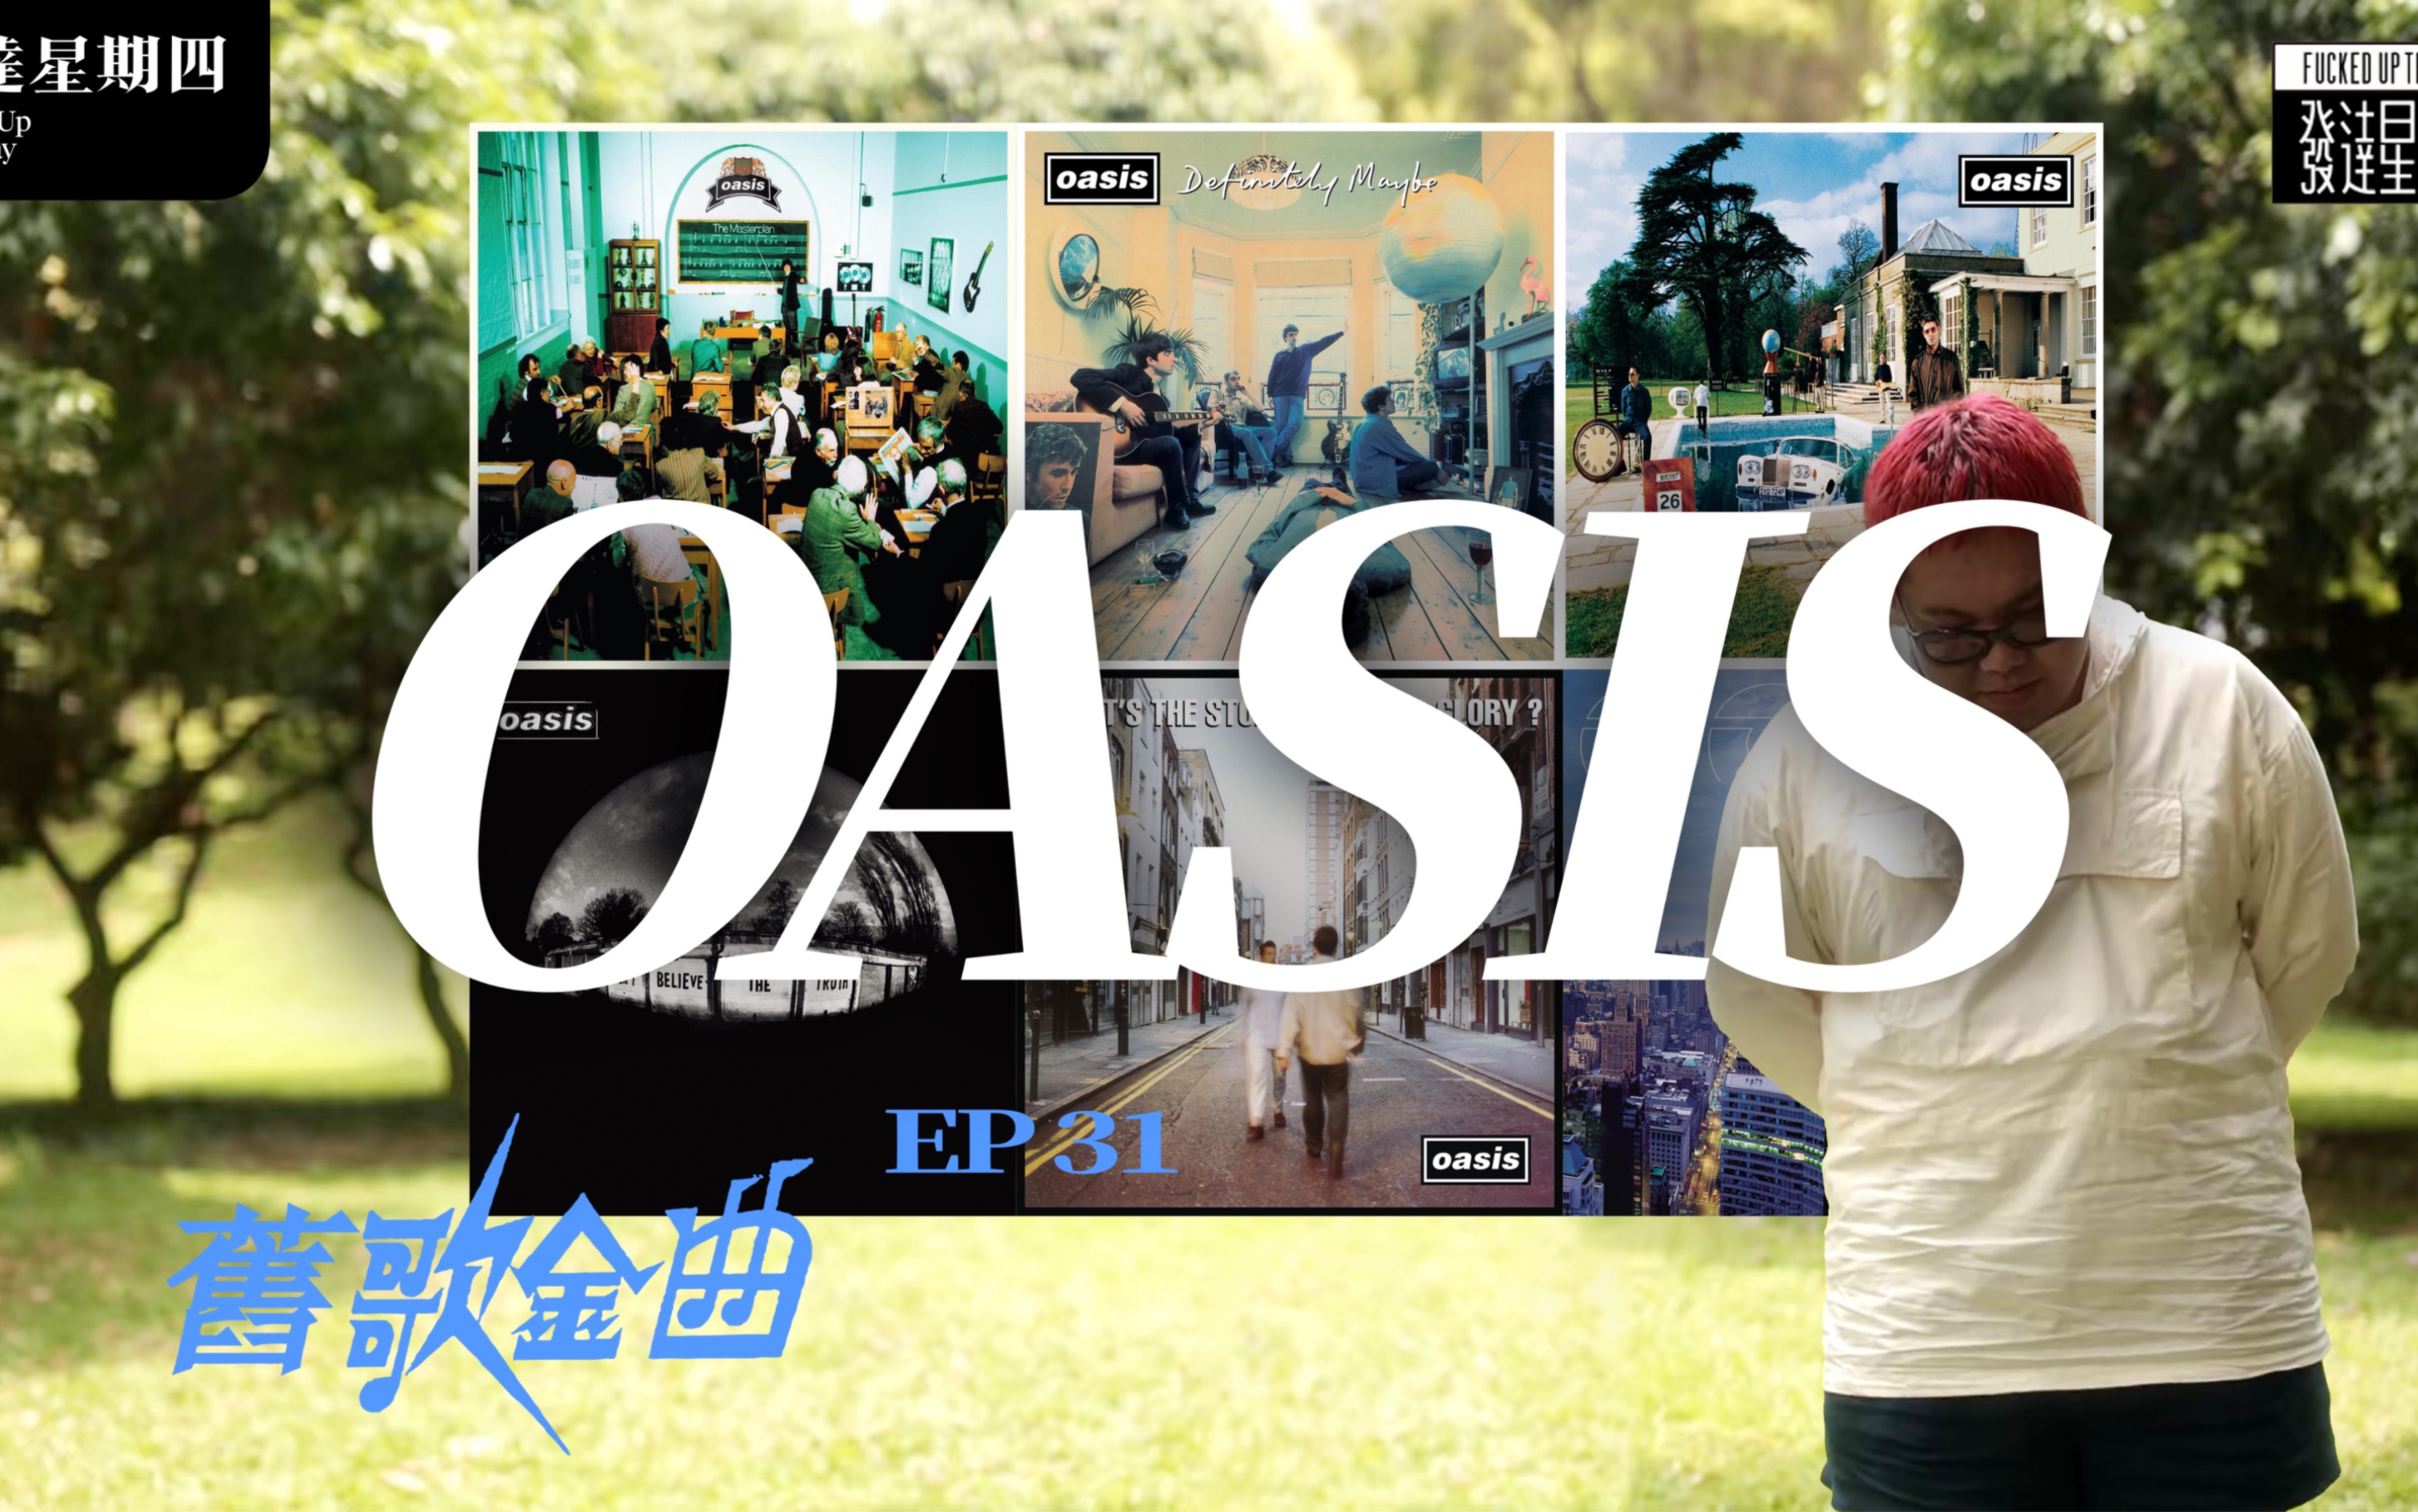 Oasis｜这支传奇英伦乐队真有那么不堪吗？！